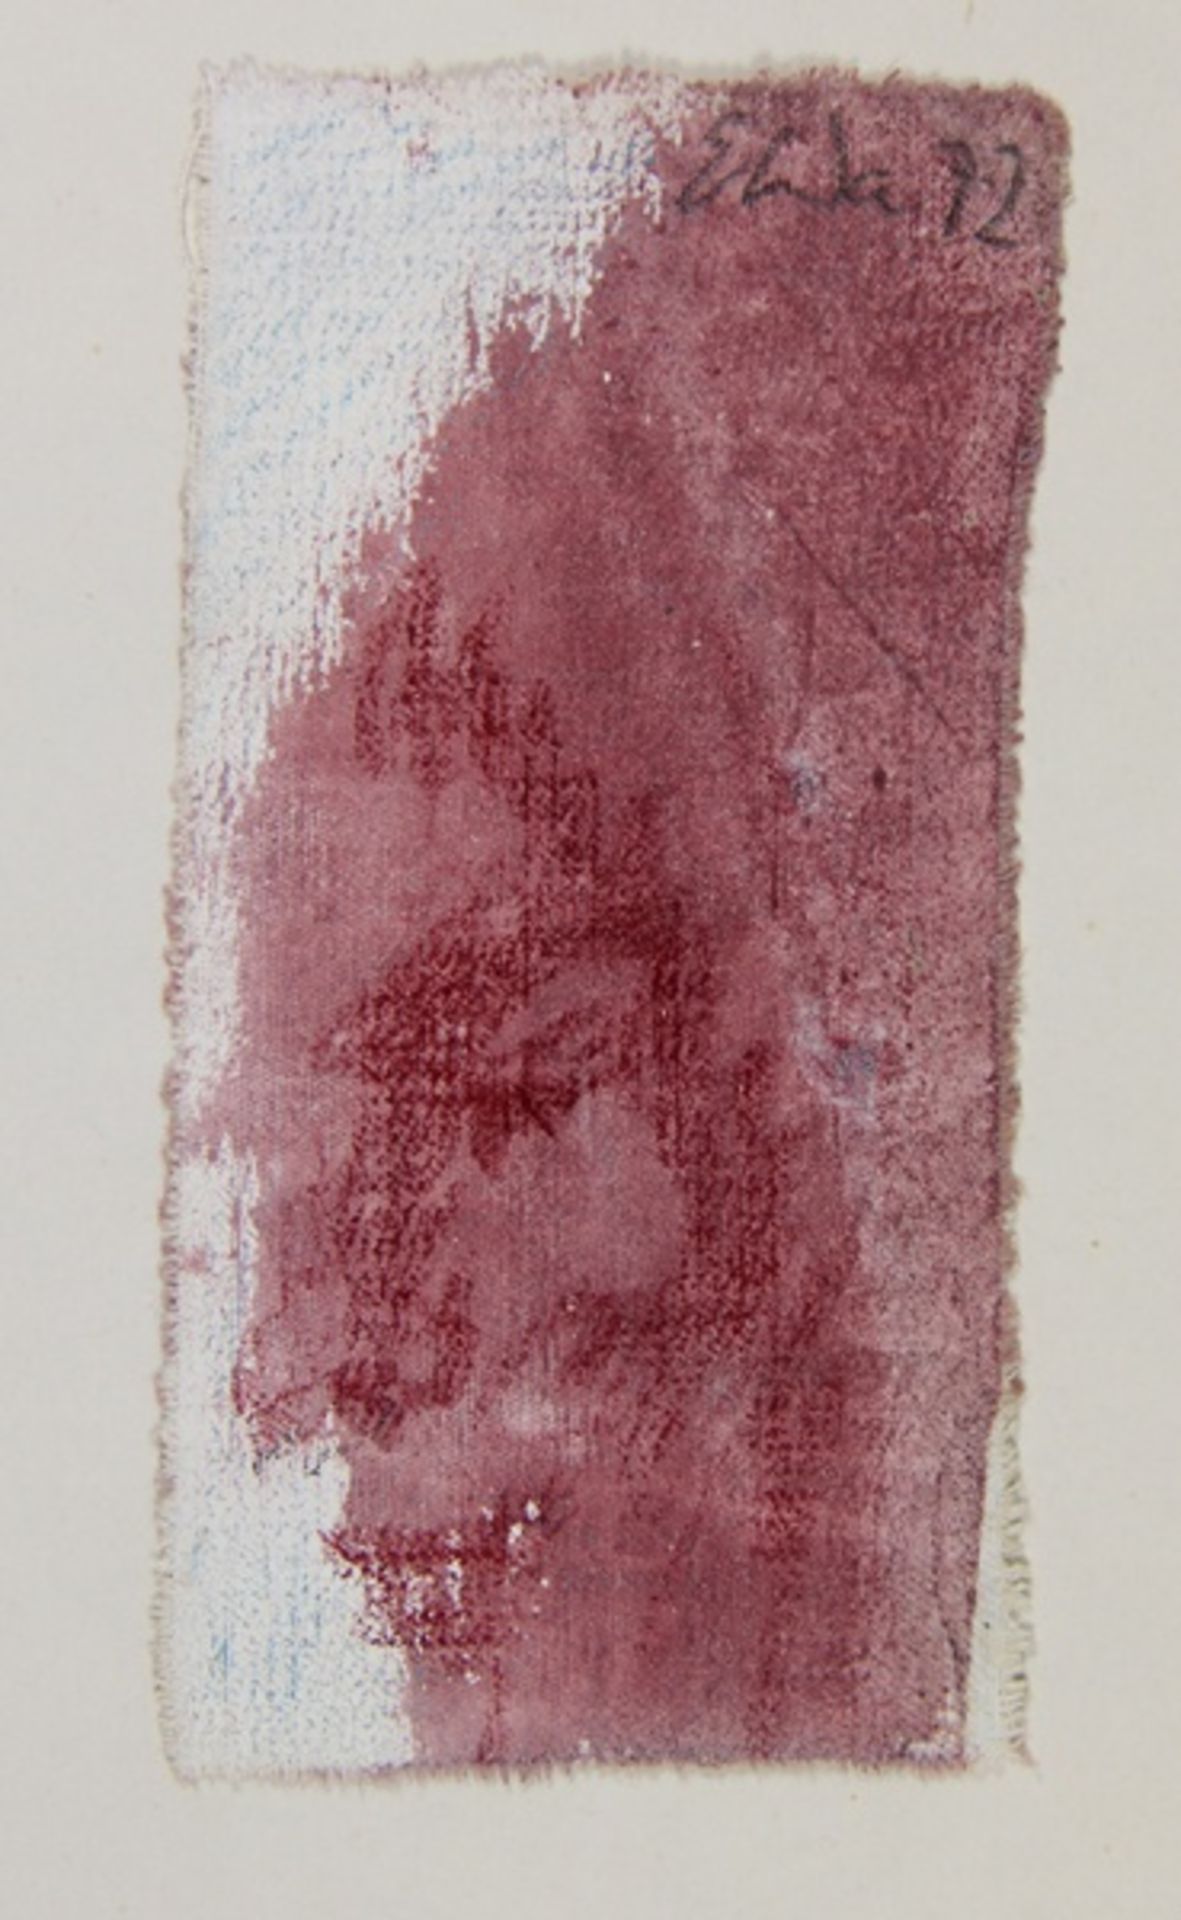 Wachter, Emil1921-2012, stark stilisiertes Gesicht im Profil, oben rechts monogrammiert E Wa 72,